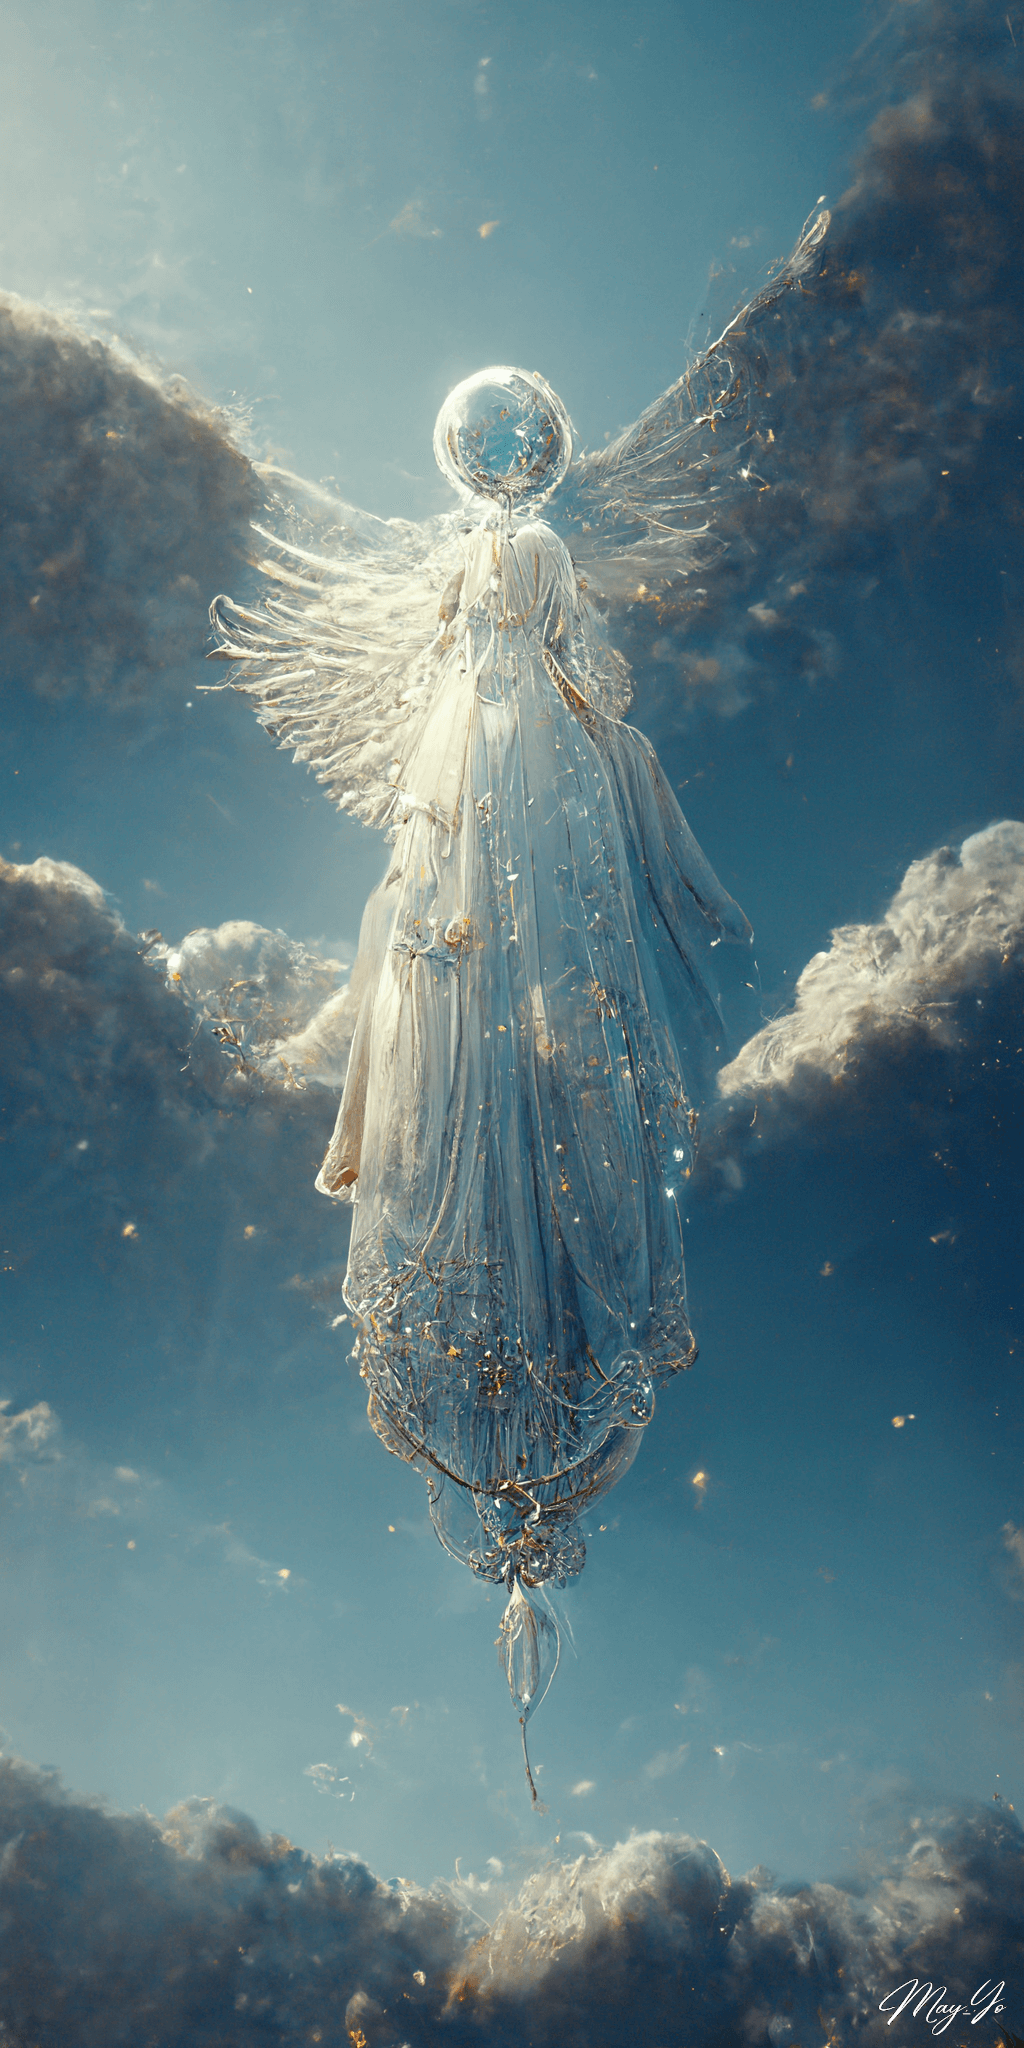 空高く羽ばたくシャボン玉の天使の壁紙イラスト 天使とシャボン玉の待受 AIイラスト待受 縦長画像 angel illustration balloon cloud